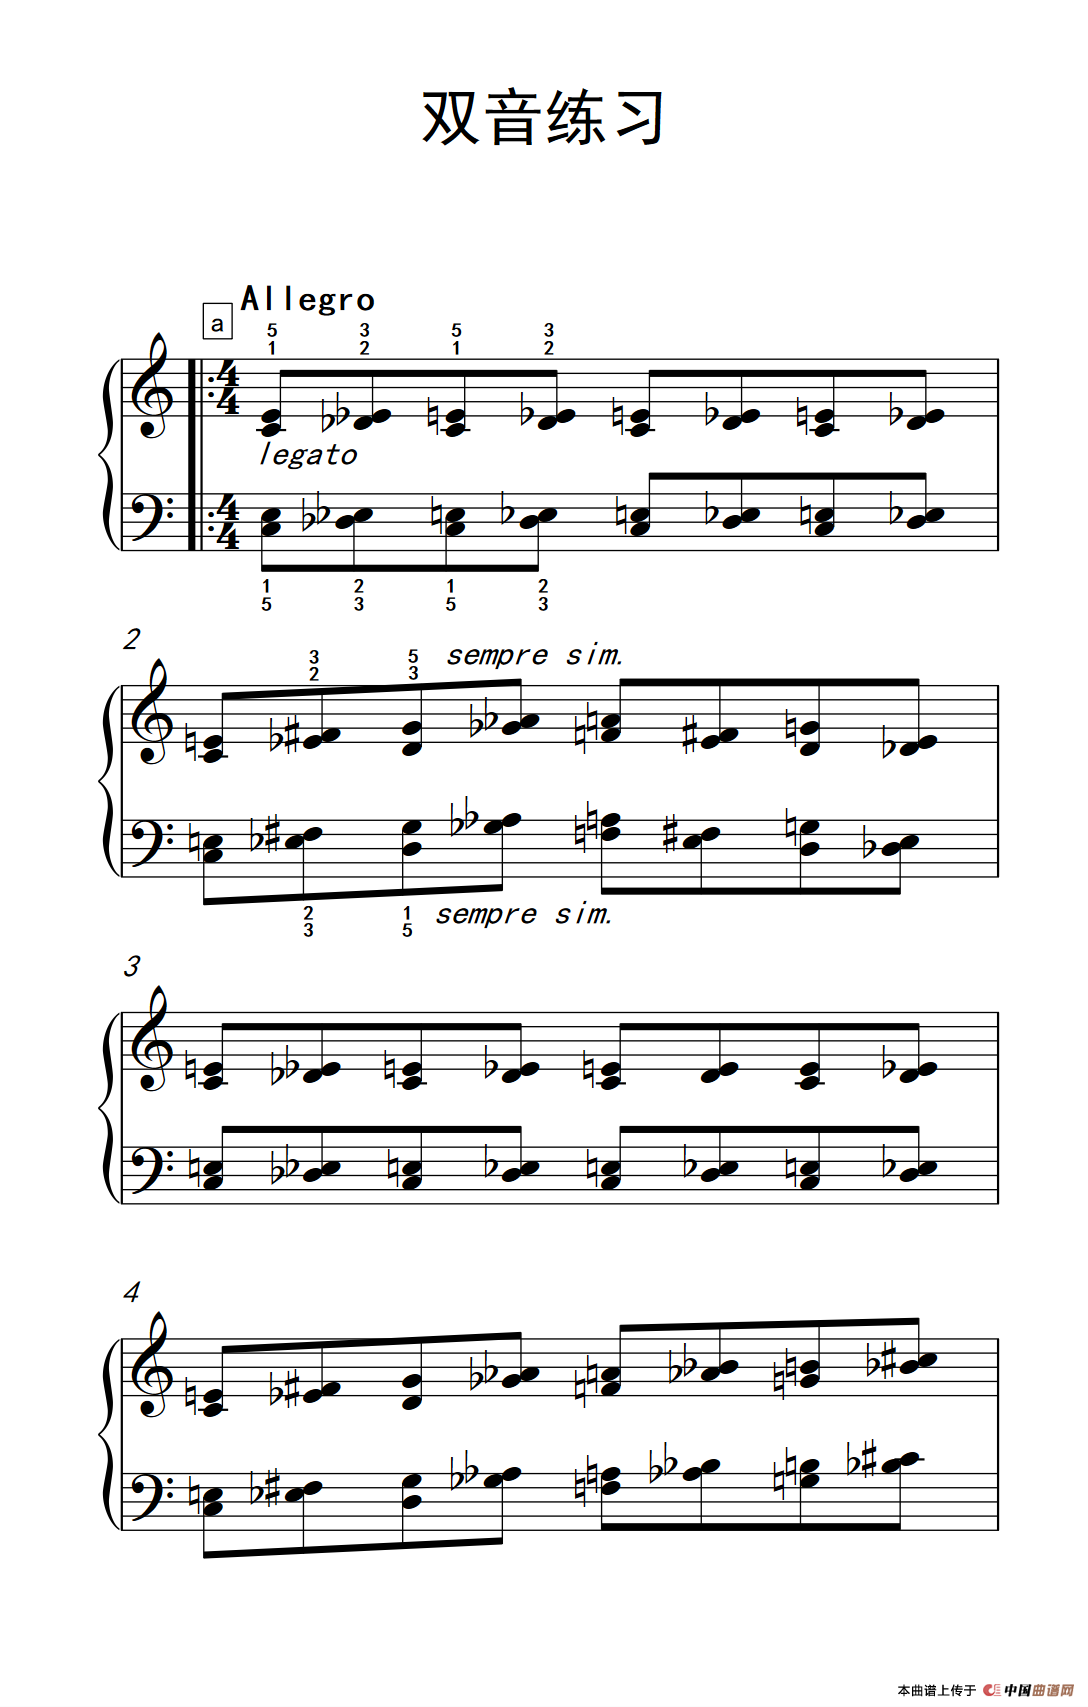 《双音练习》钢琴曲谱图分享